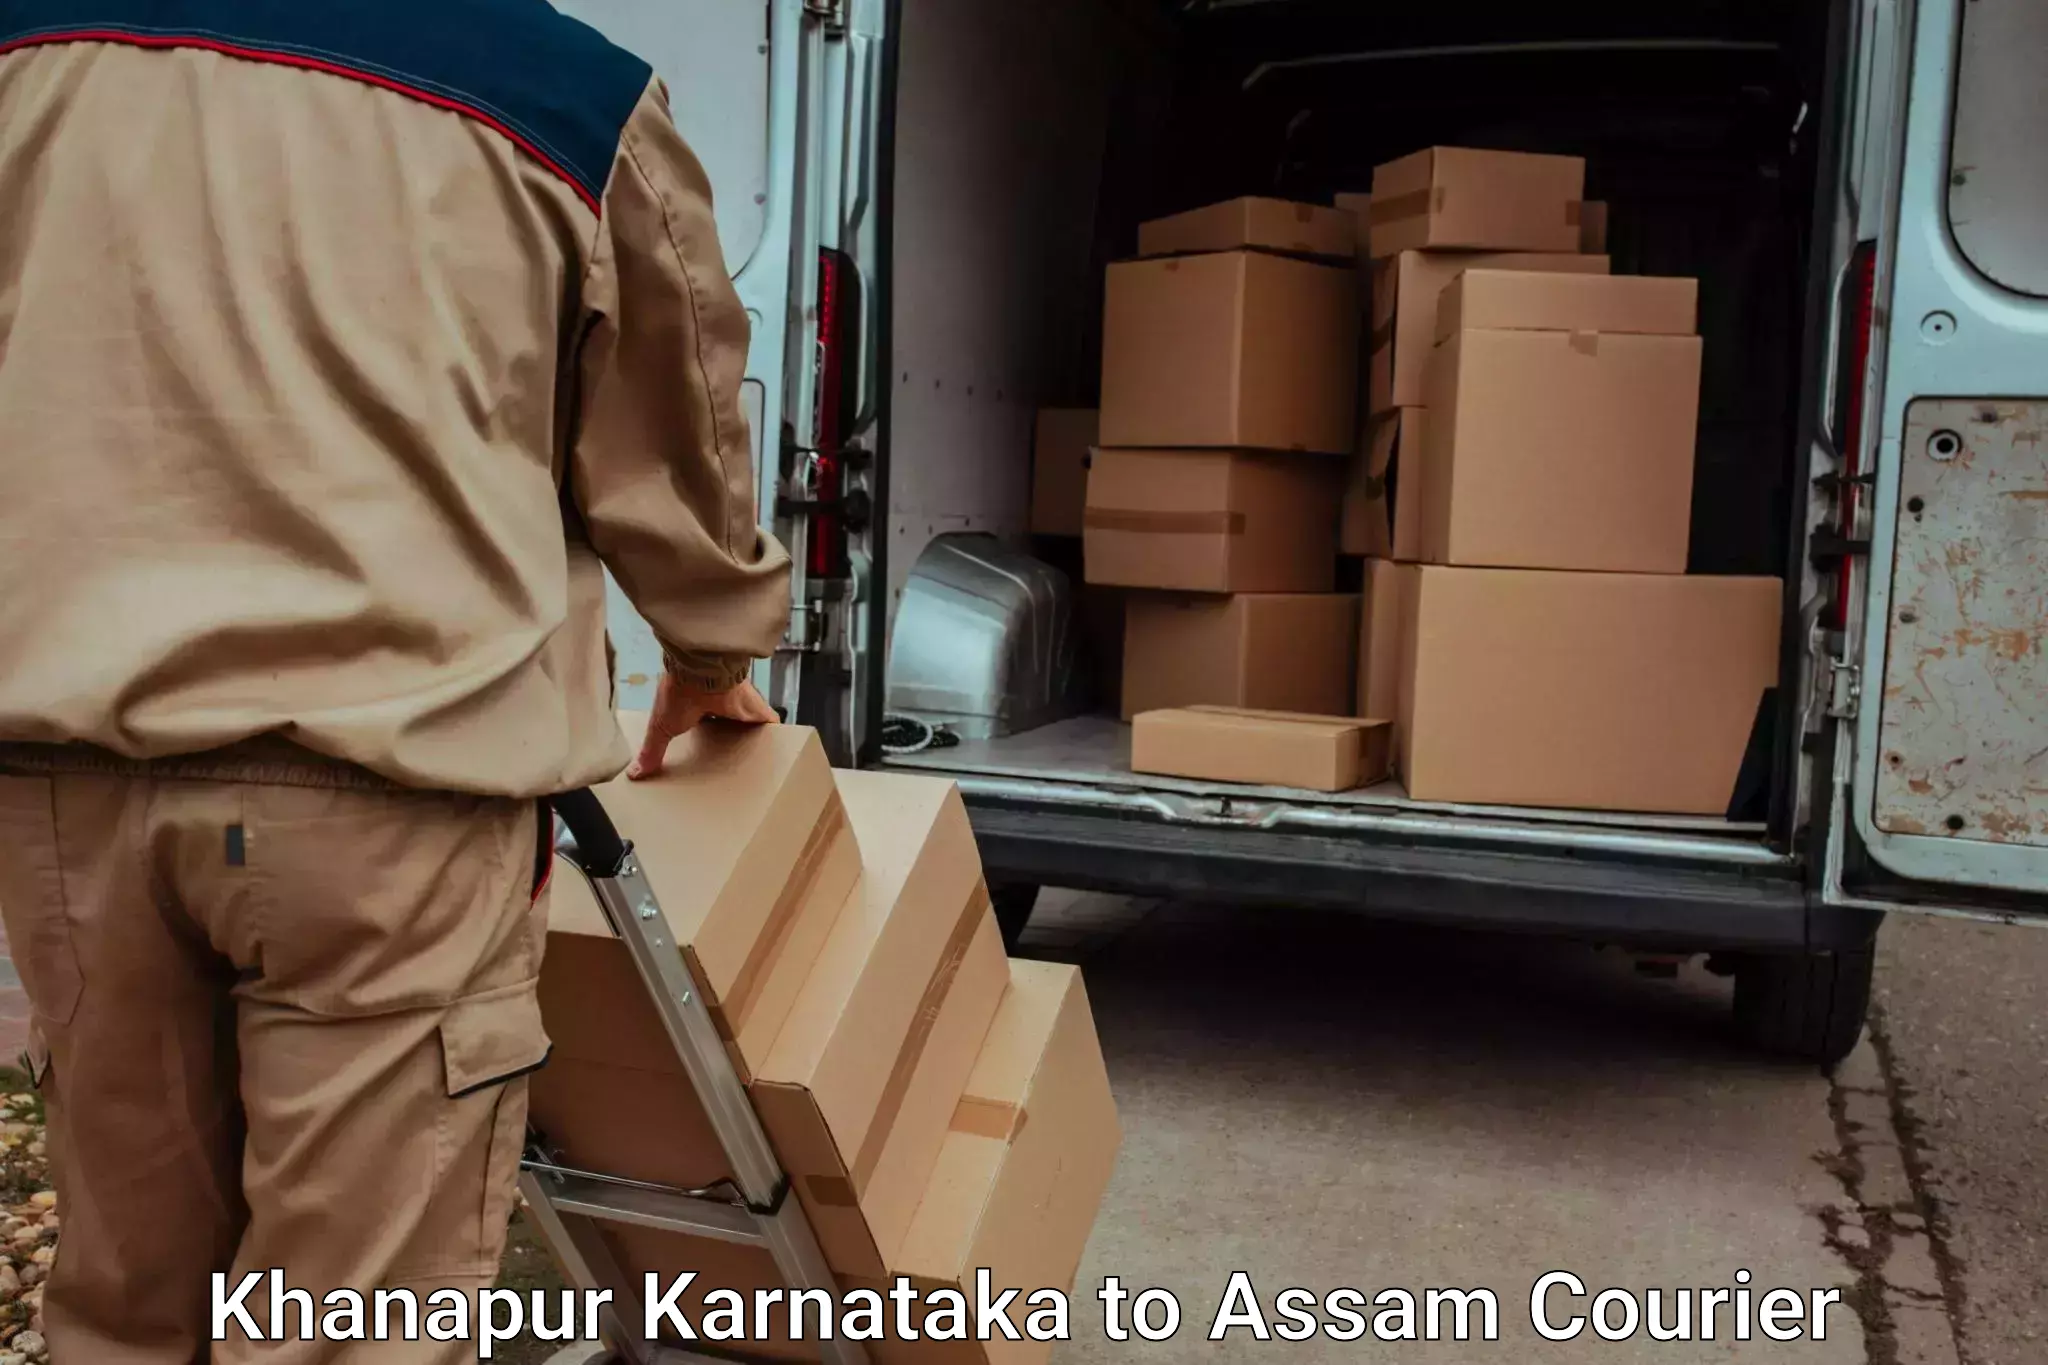 Baggage transport scheduler Khanapur Karnataka to Haflong